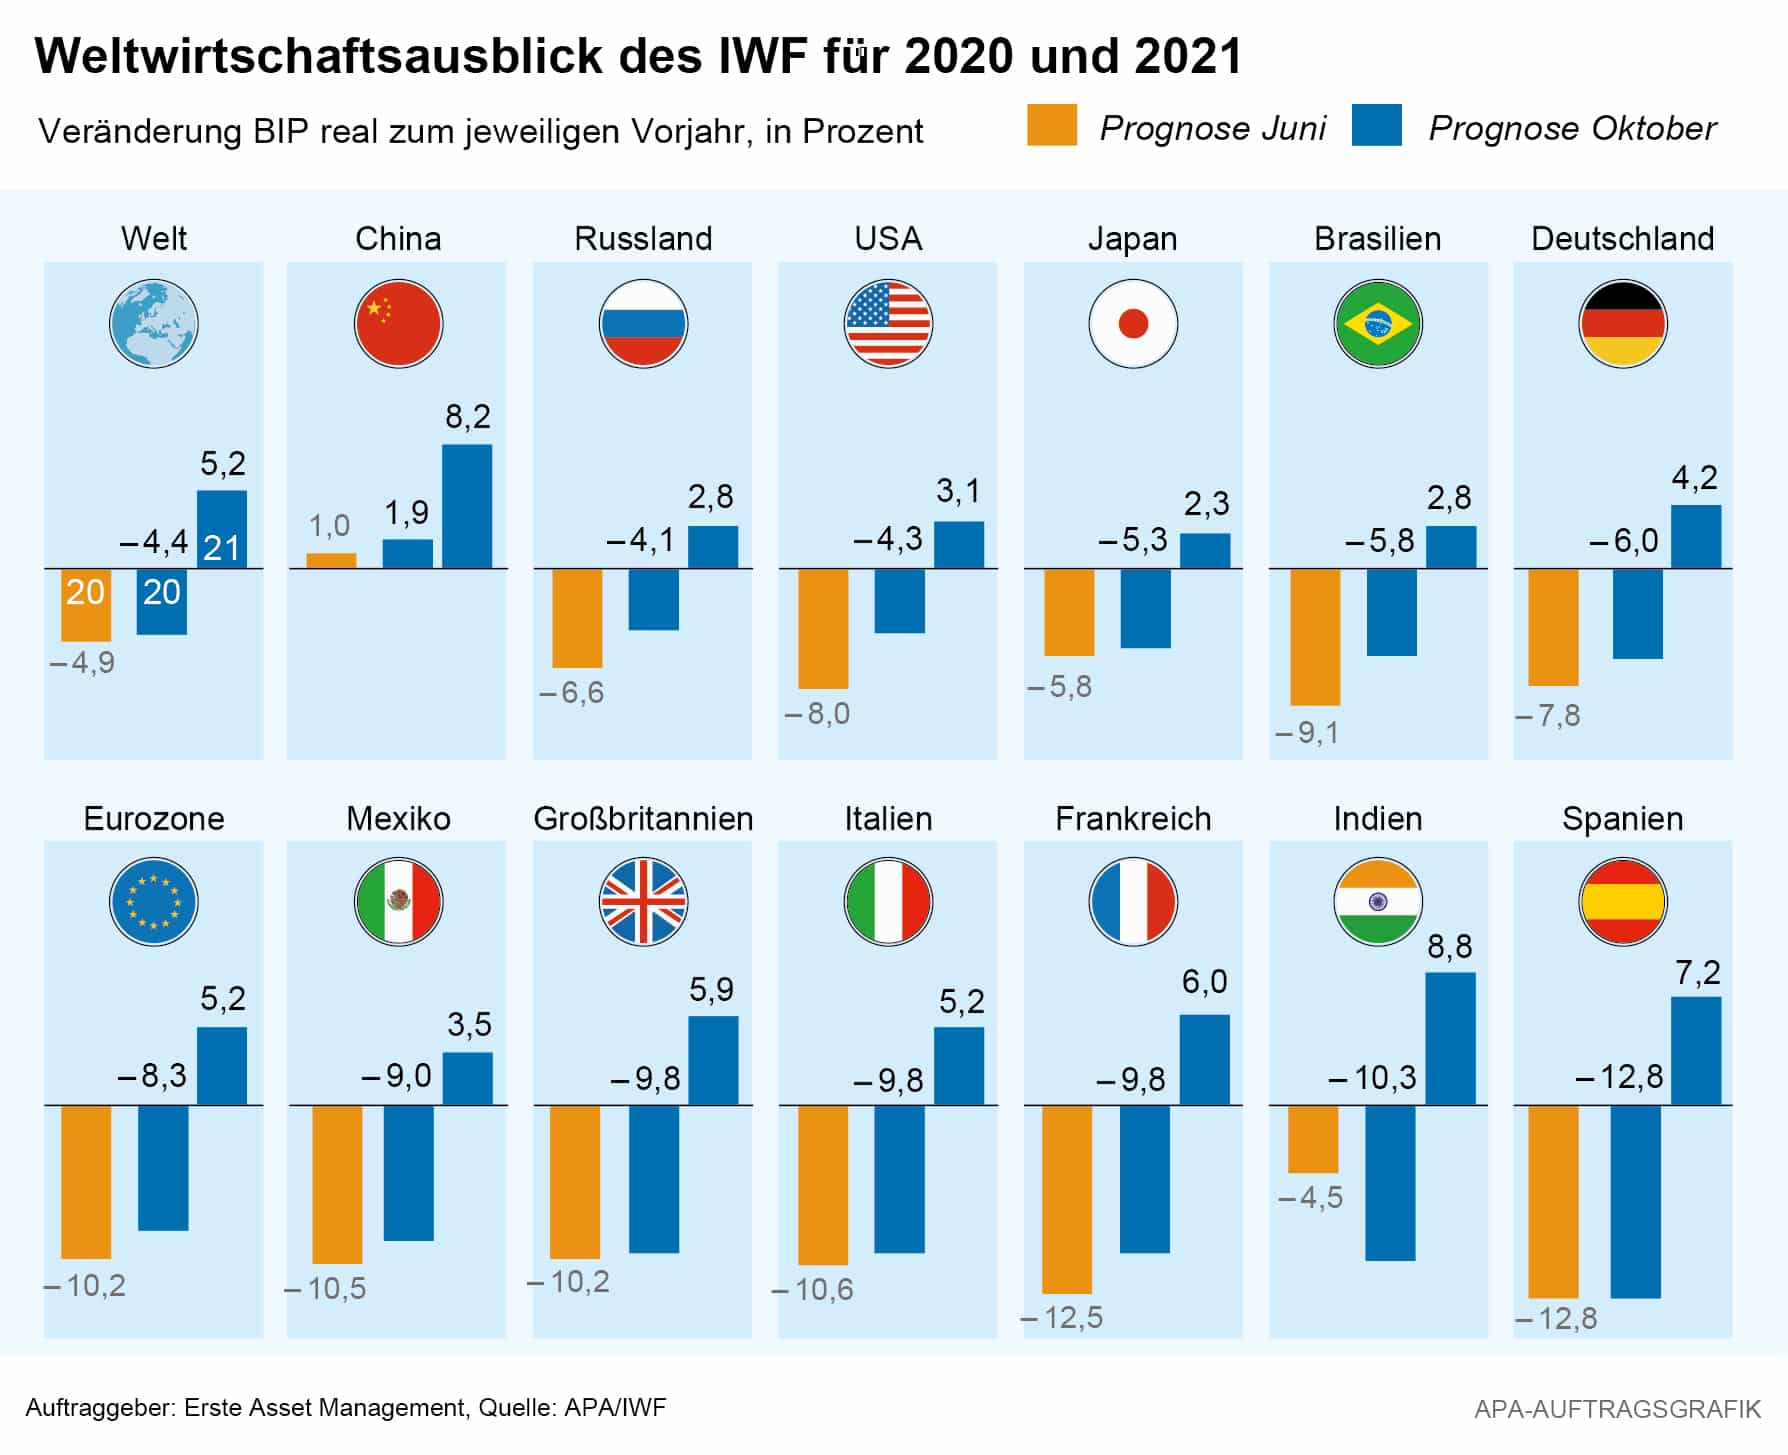 Weltwirtschaftsausblick des IWF 2020 und 2021